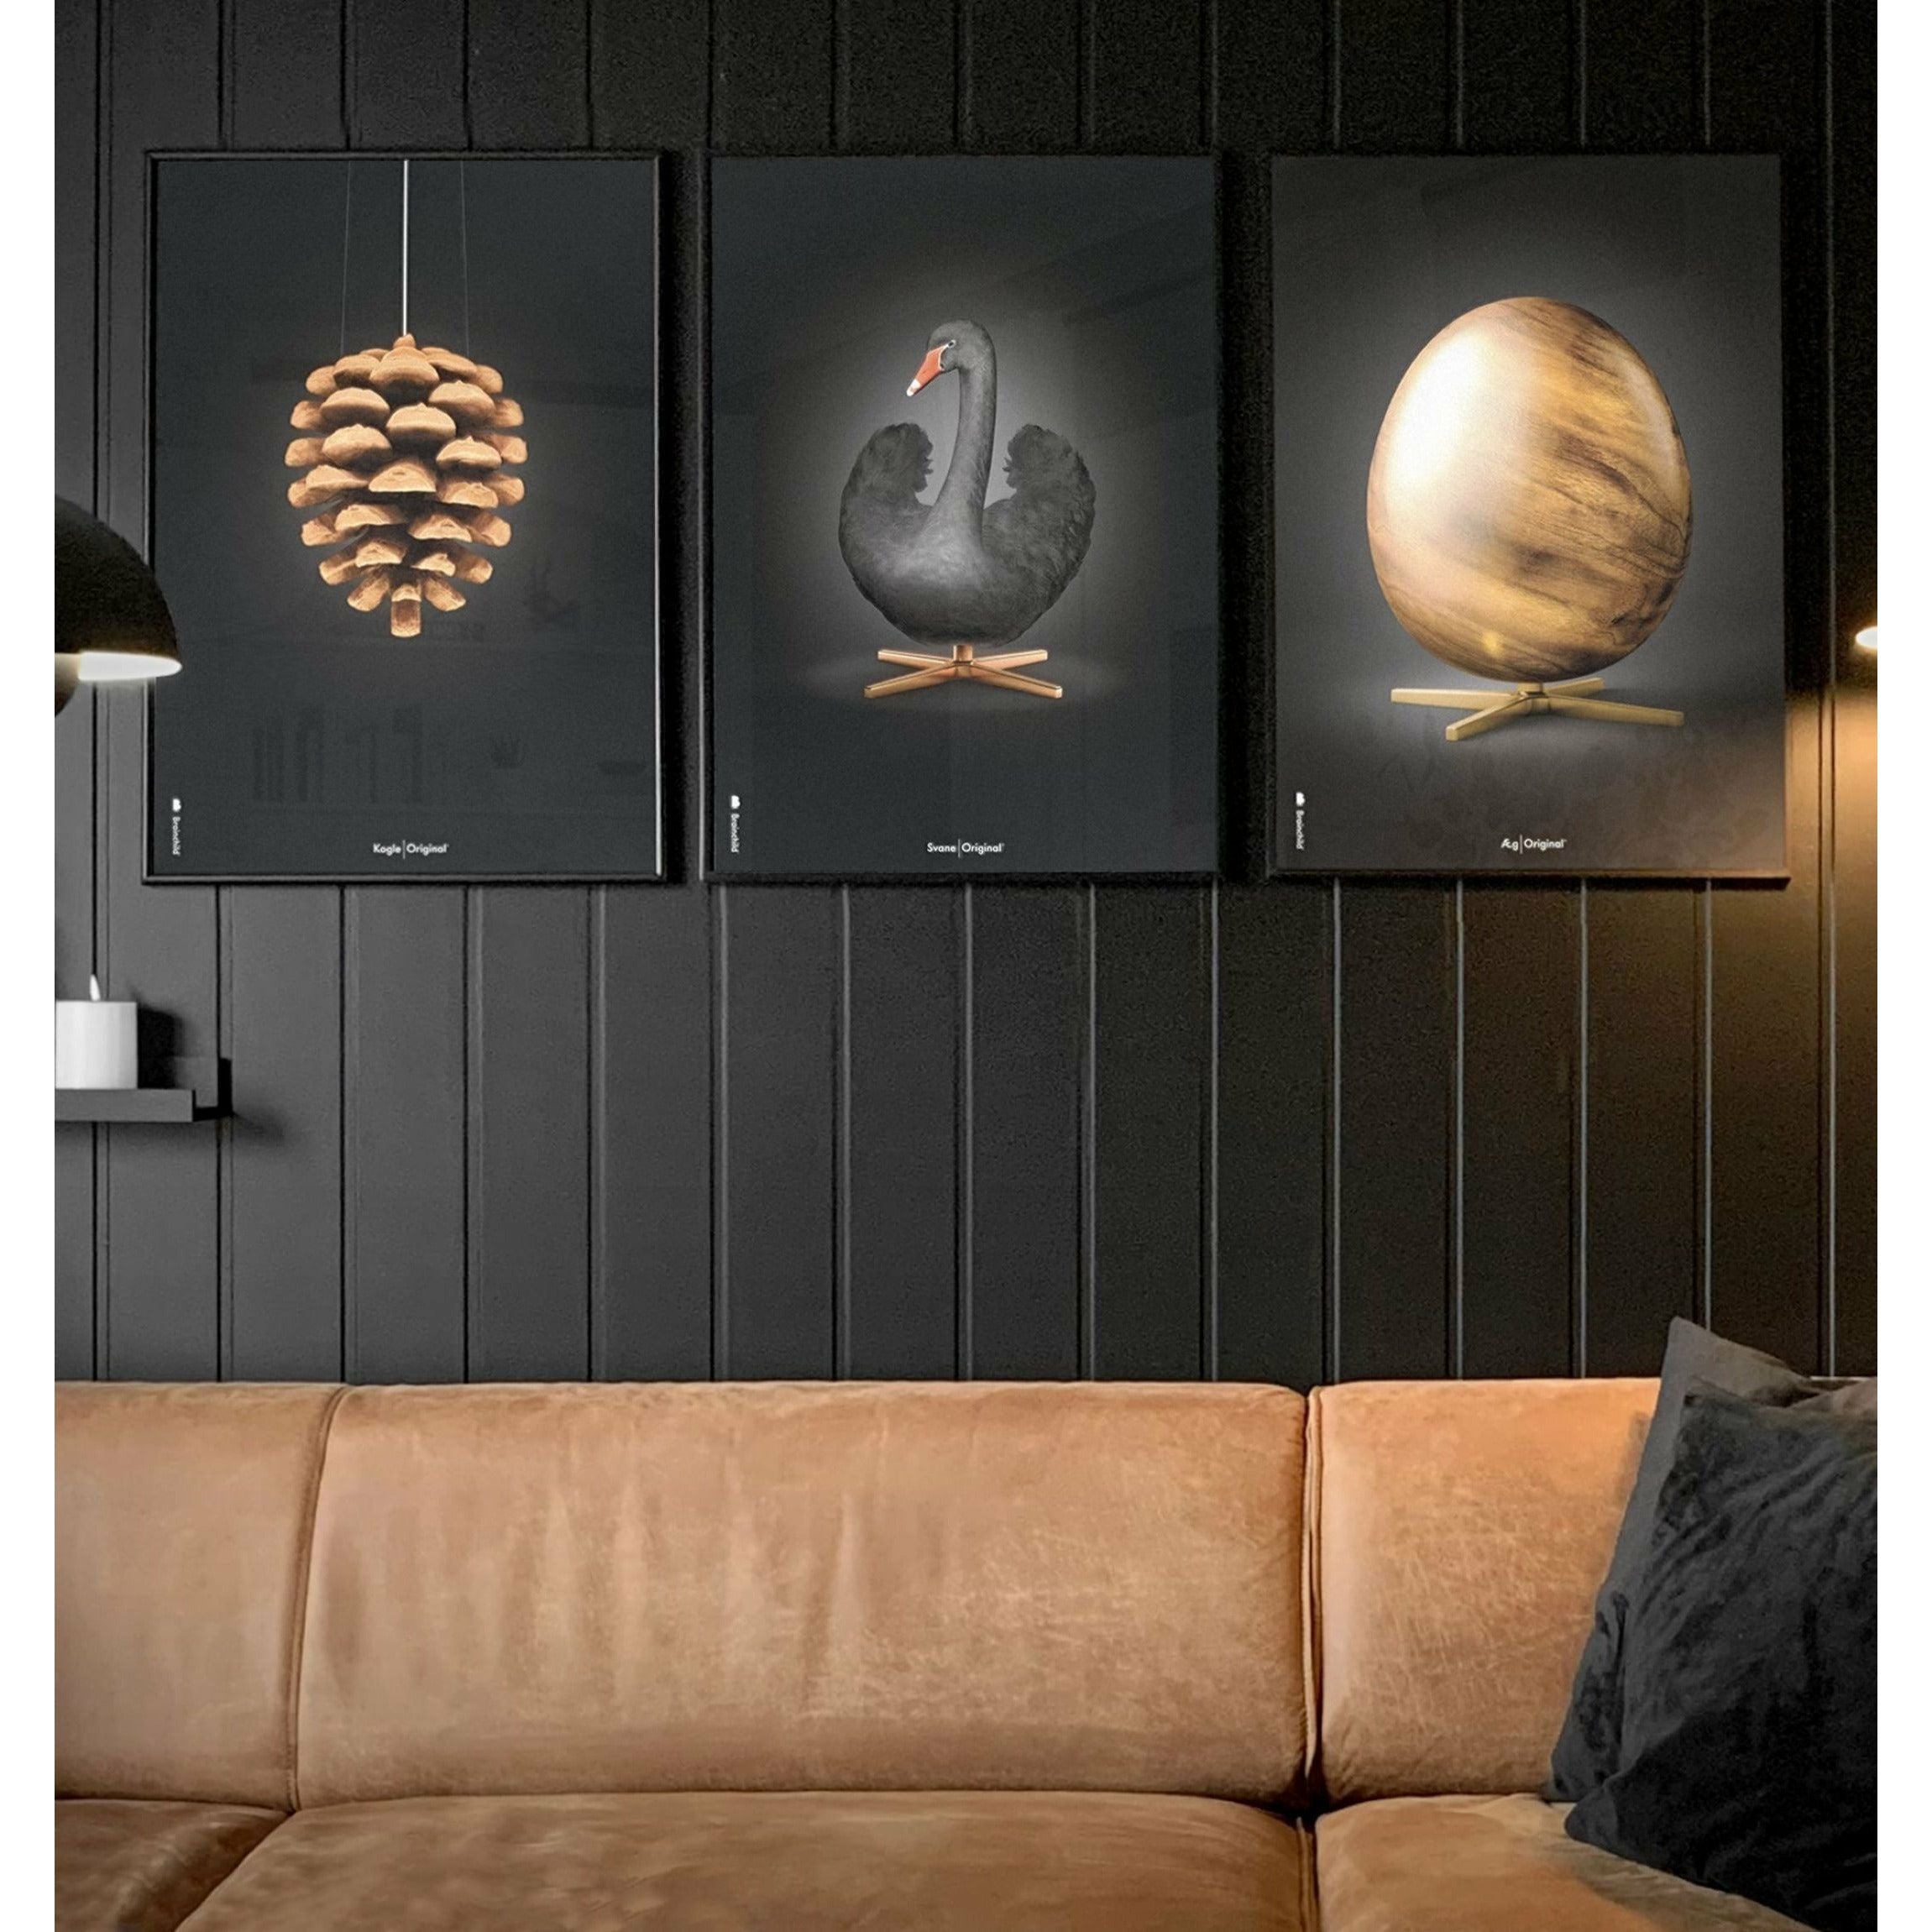 brainchild Pine Cone Classic Poster, frame gemaakt van donker hout 50x70 cm, zwarte achtergrond